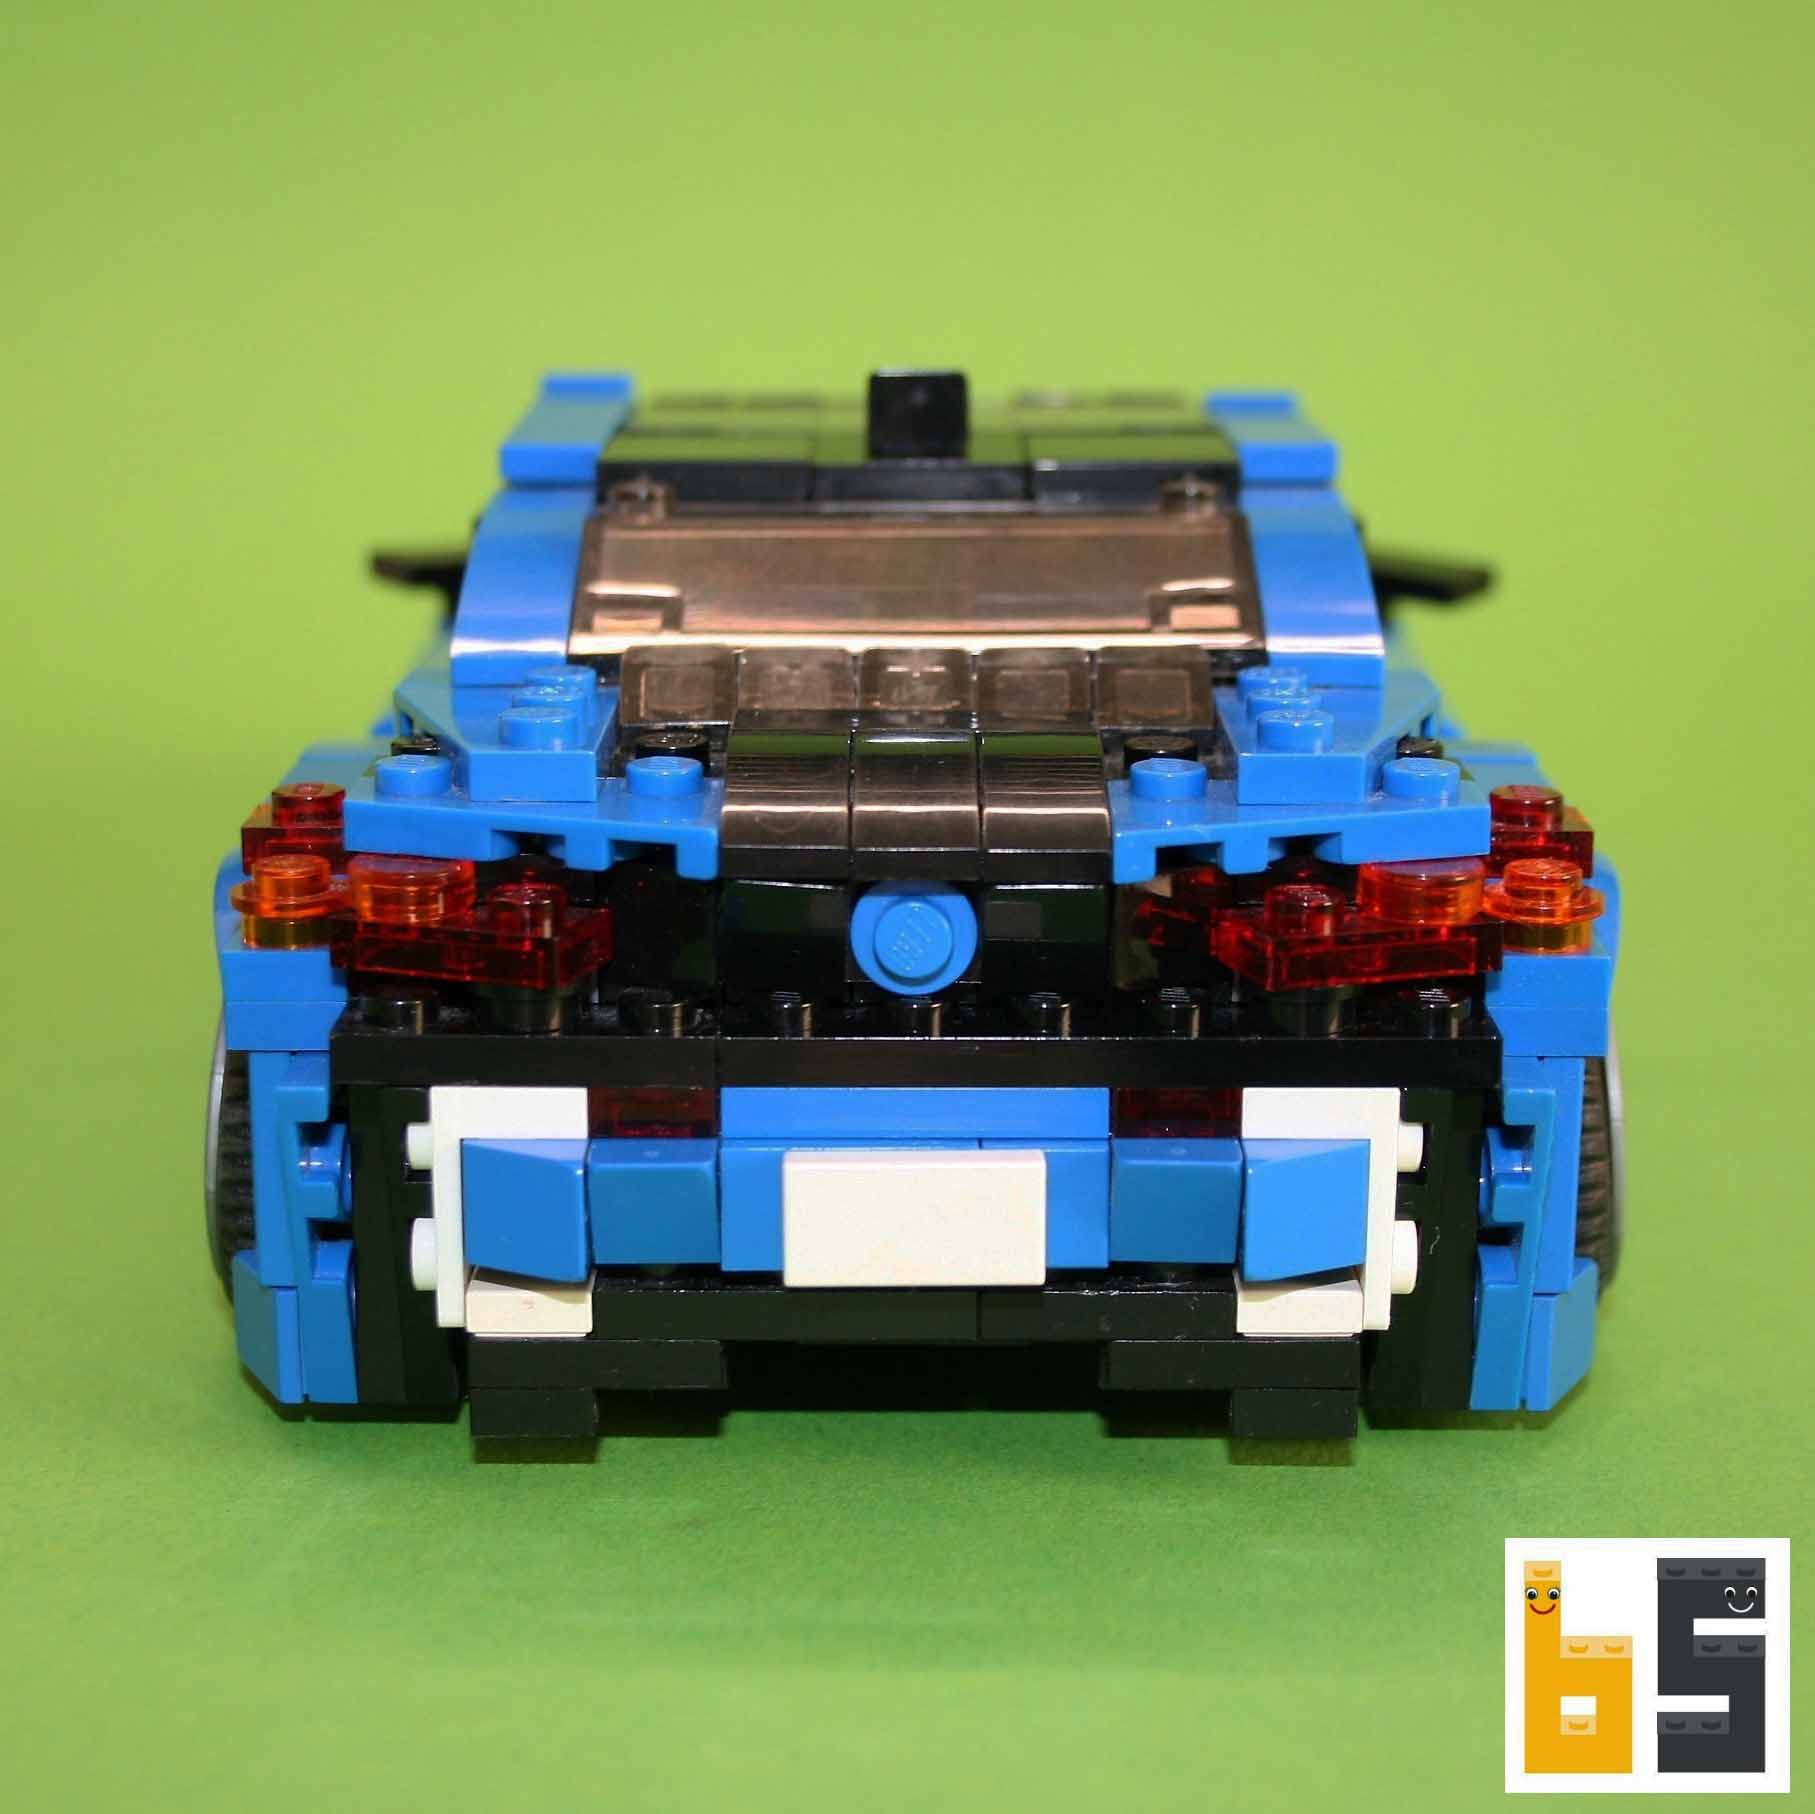 Various Lego Cars